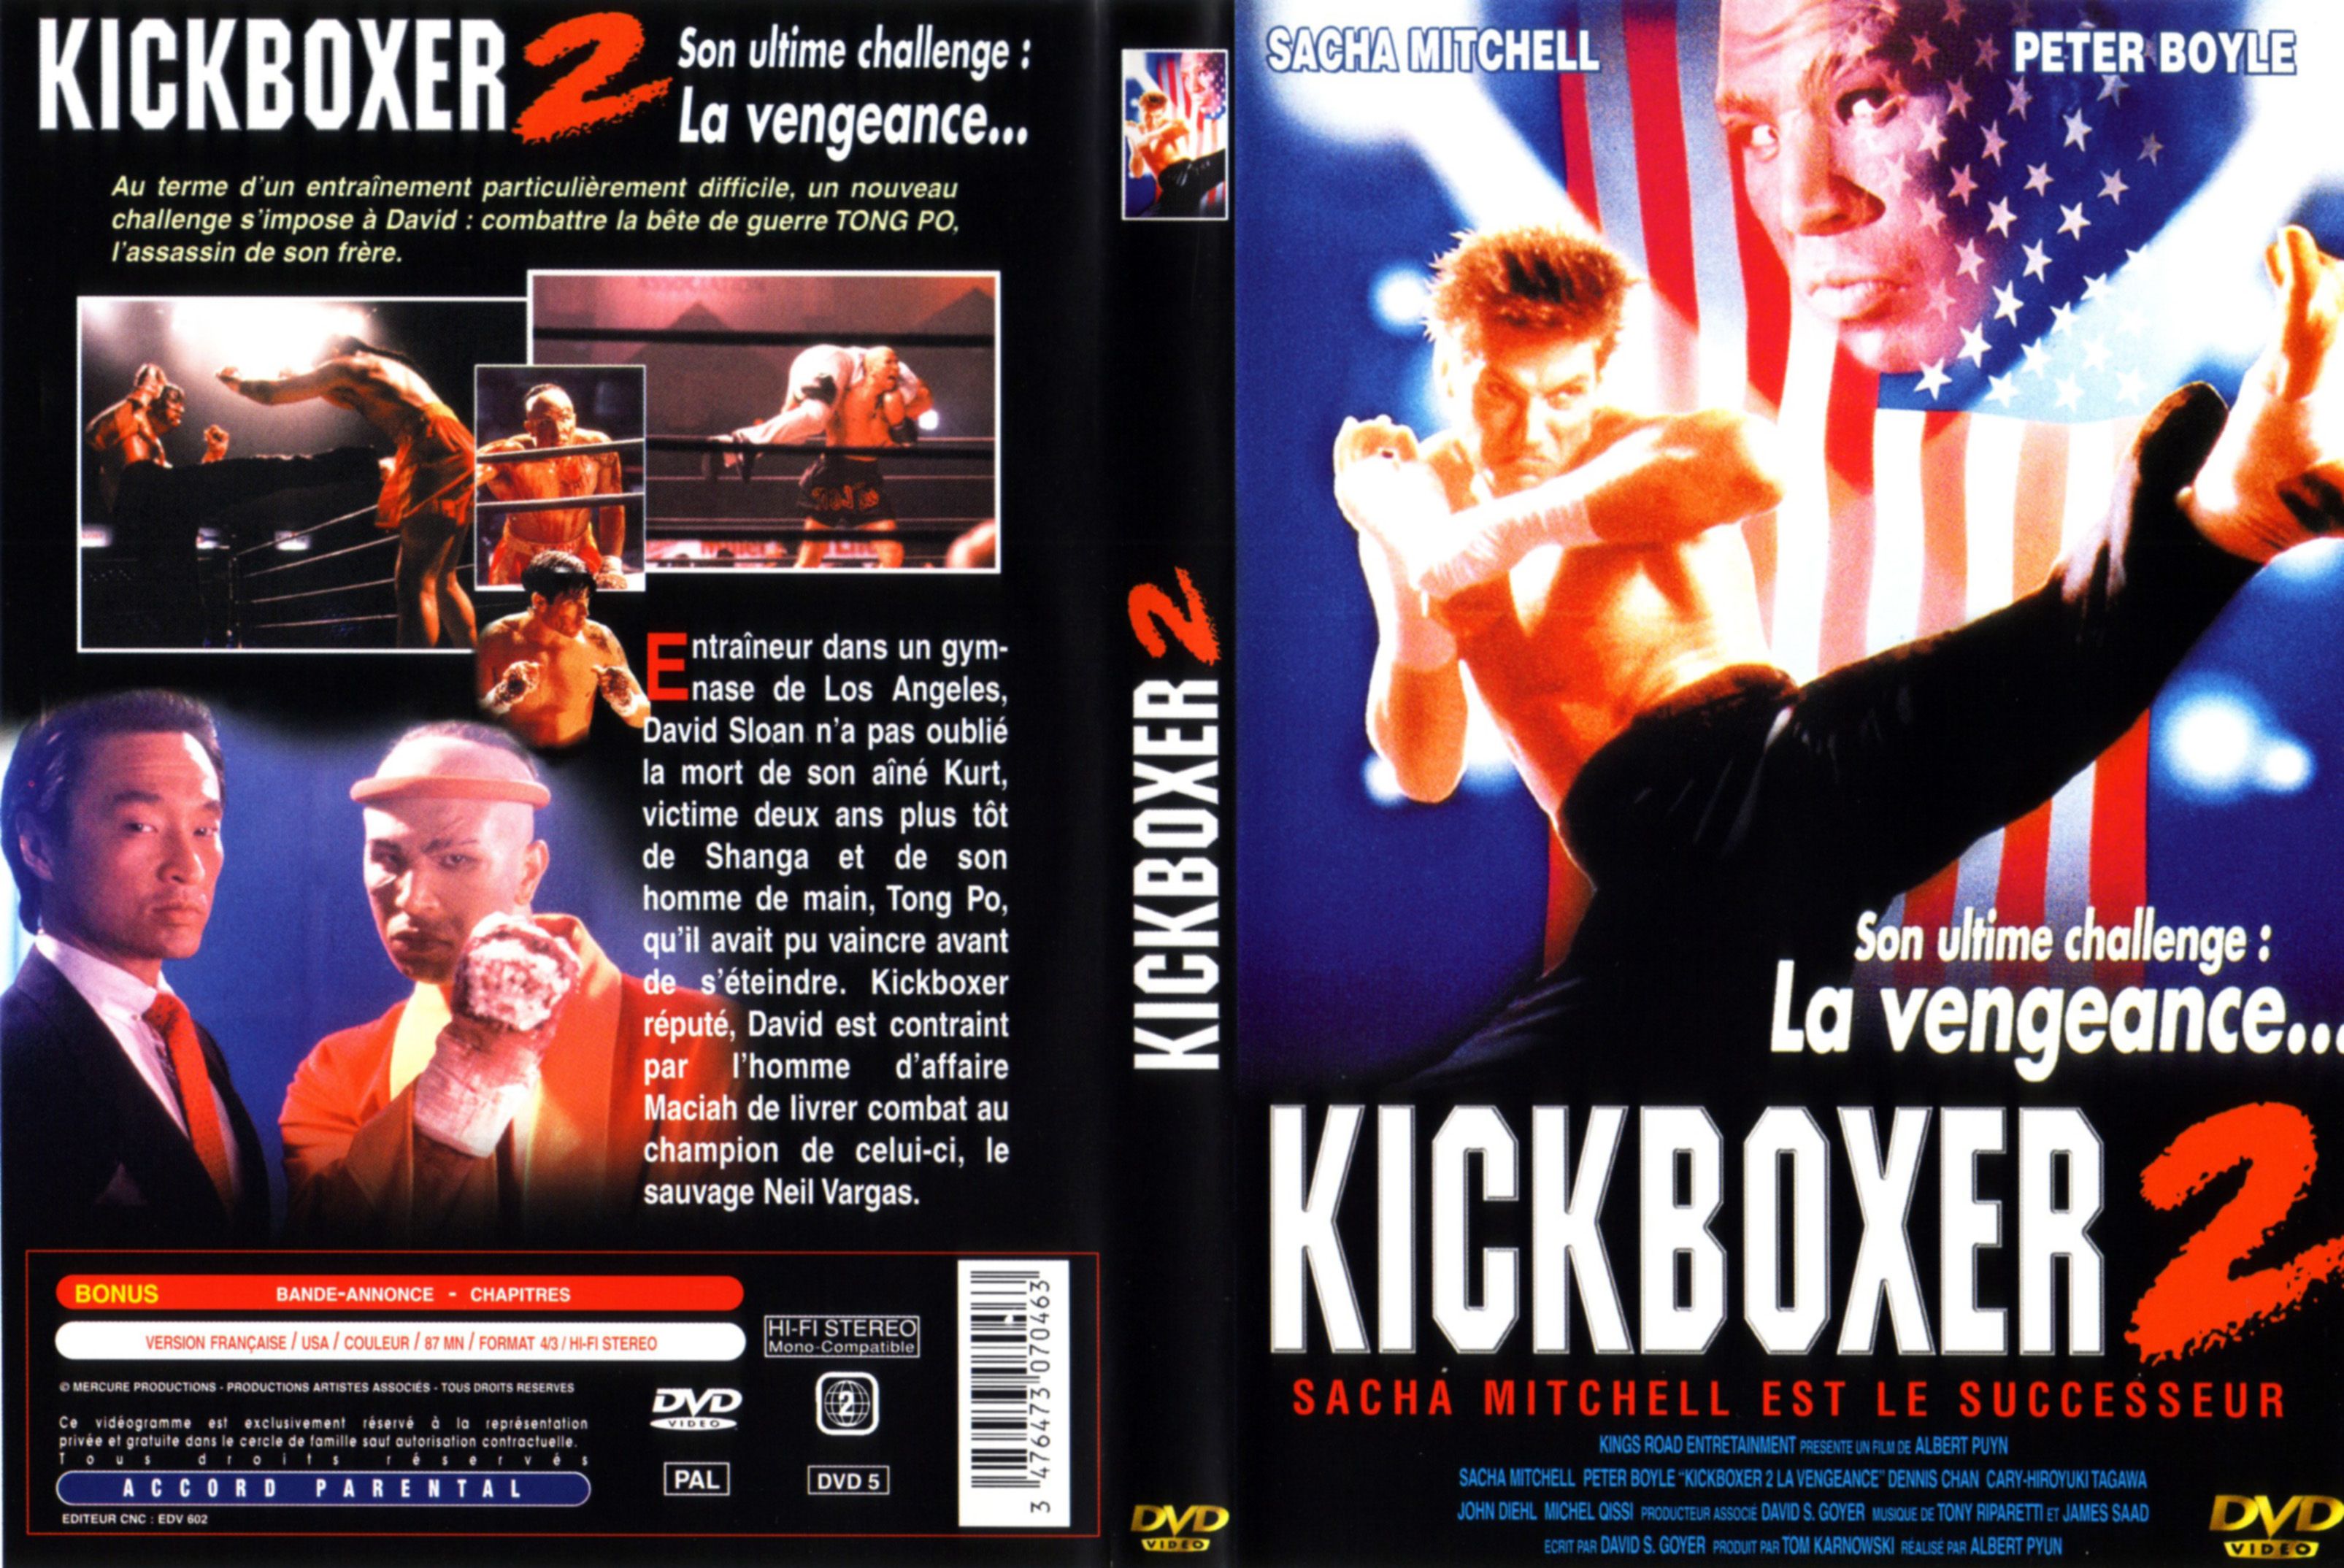 Jaquette DVD Kickboxer 2